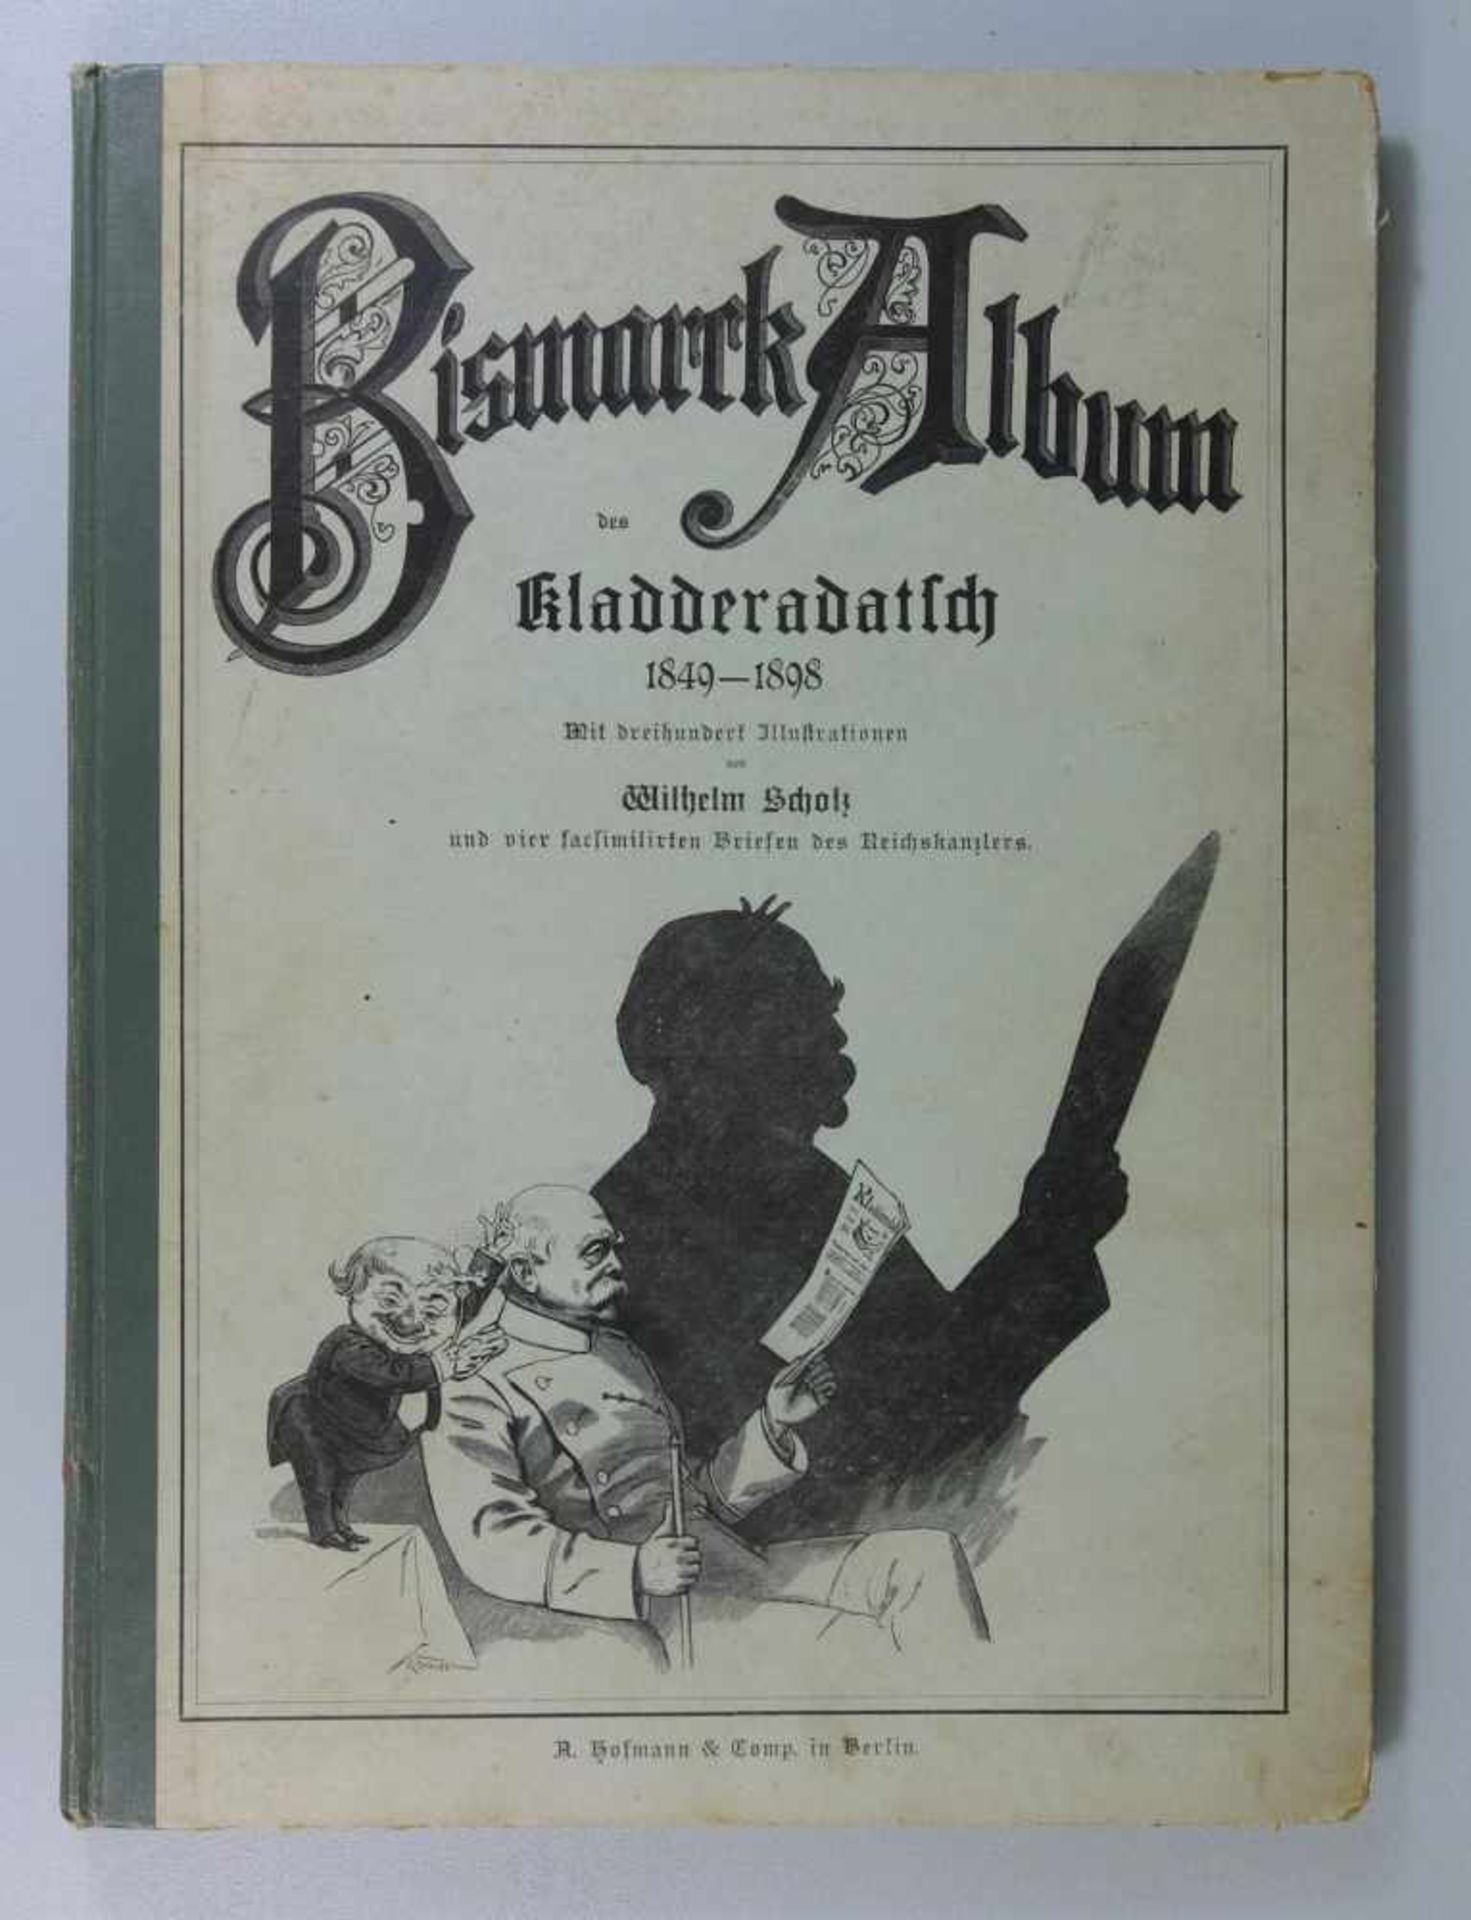 Bismarck Album des Kladderadatsch 1849-1898mit 300 Illustrationen von Wilhelm Scholz und 4